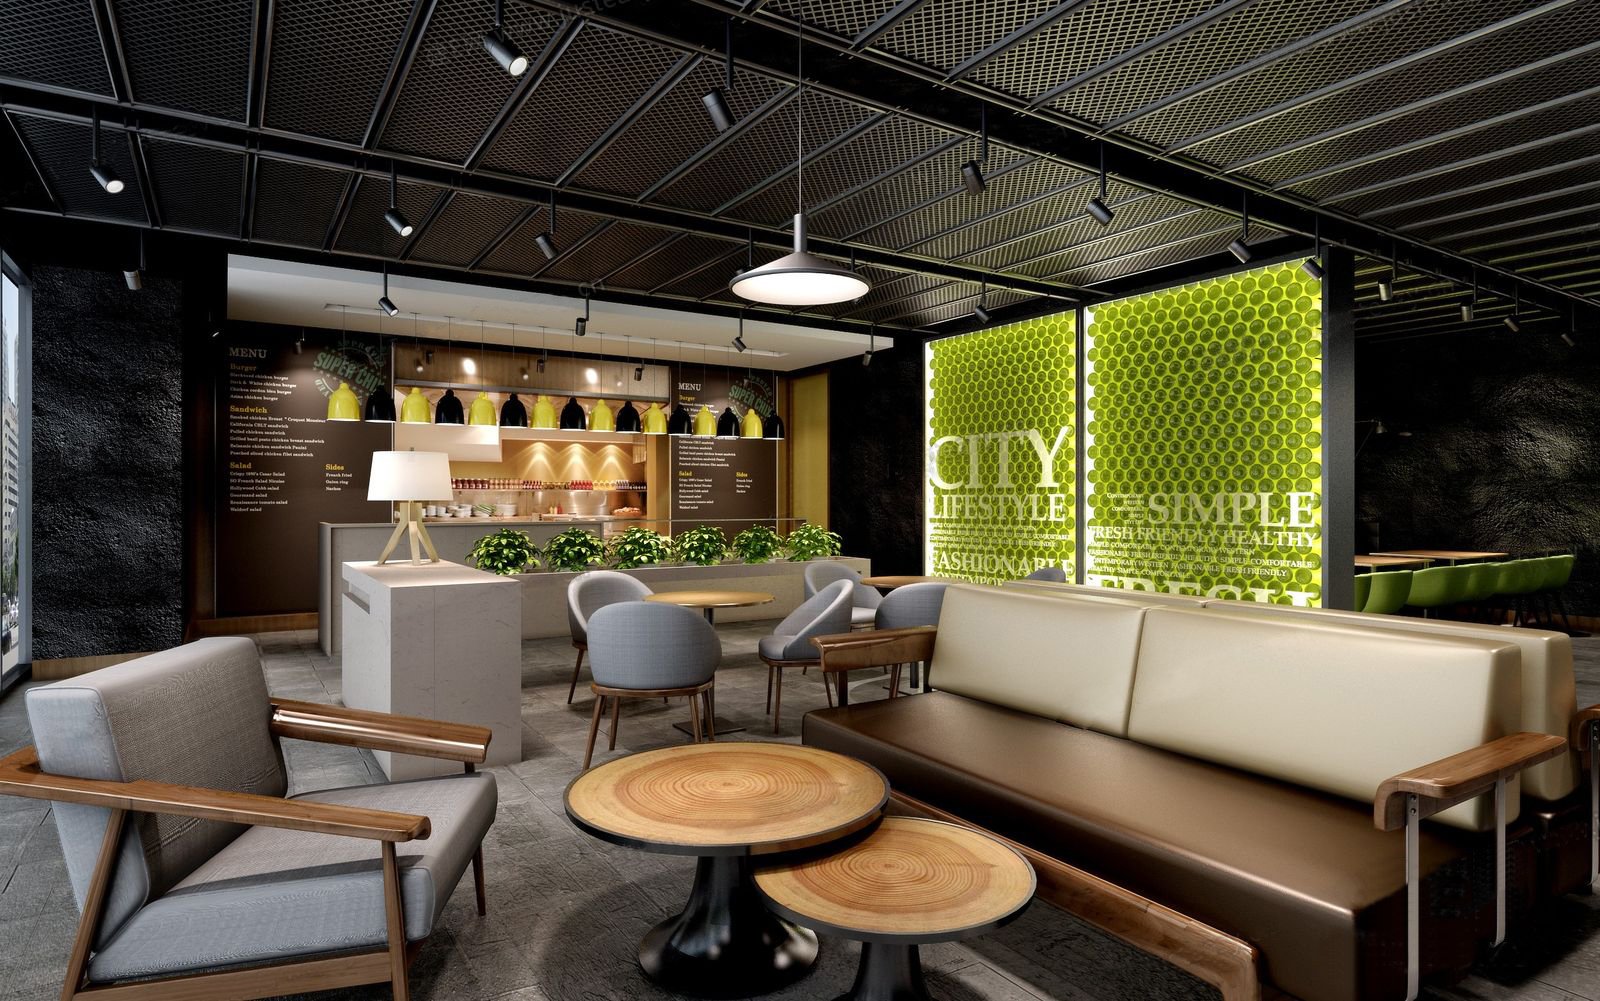 3dmax模型 中西餐厅咖啡厅茶楼店面loft工业风格3d室内模型素材 3D模型-第8张